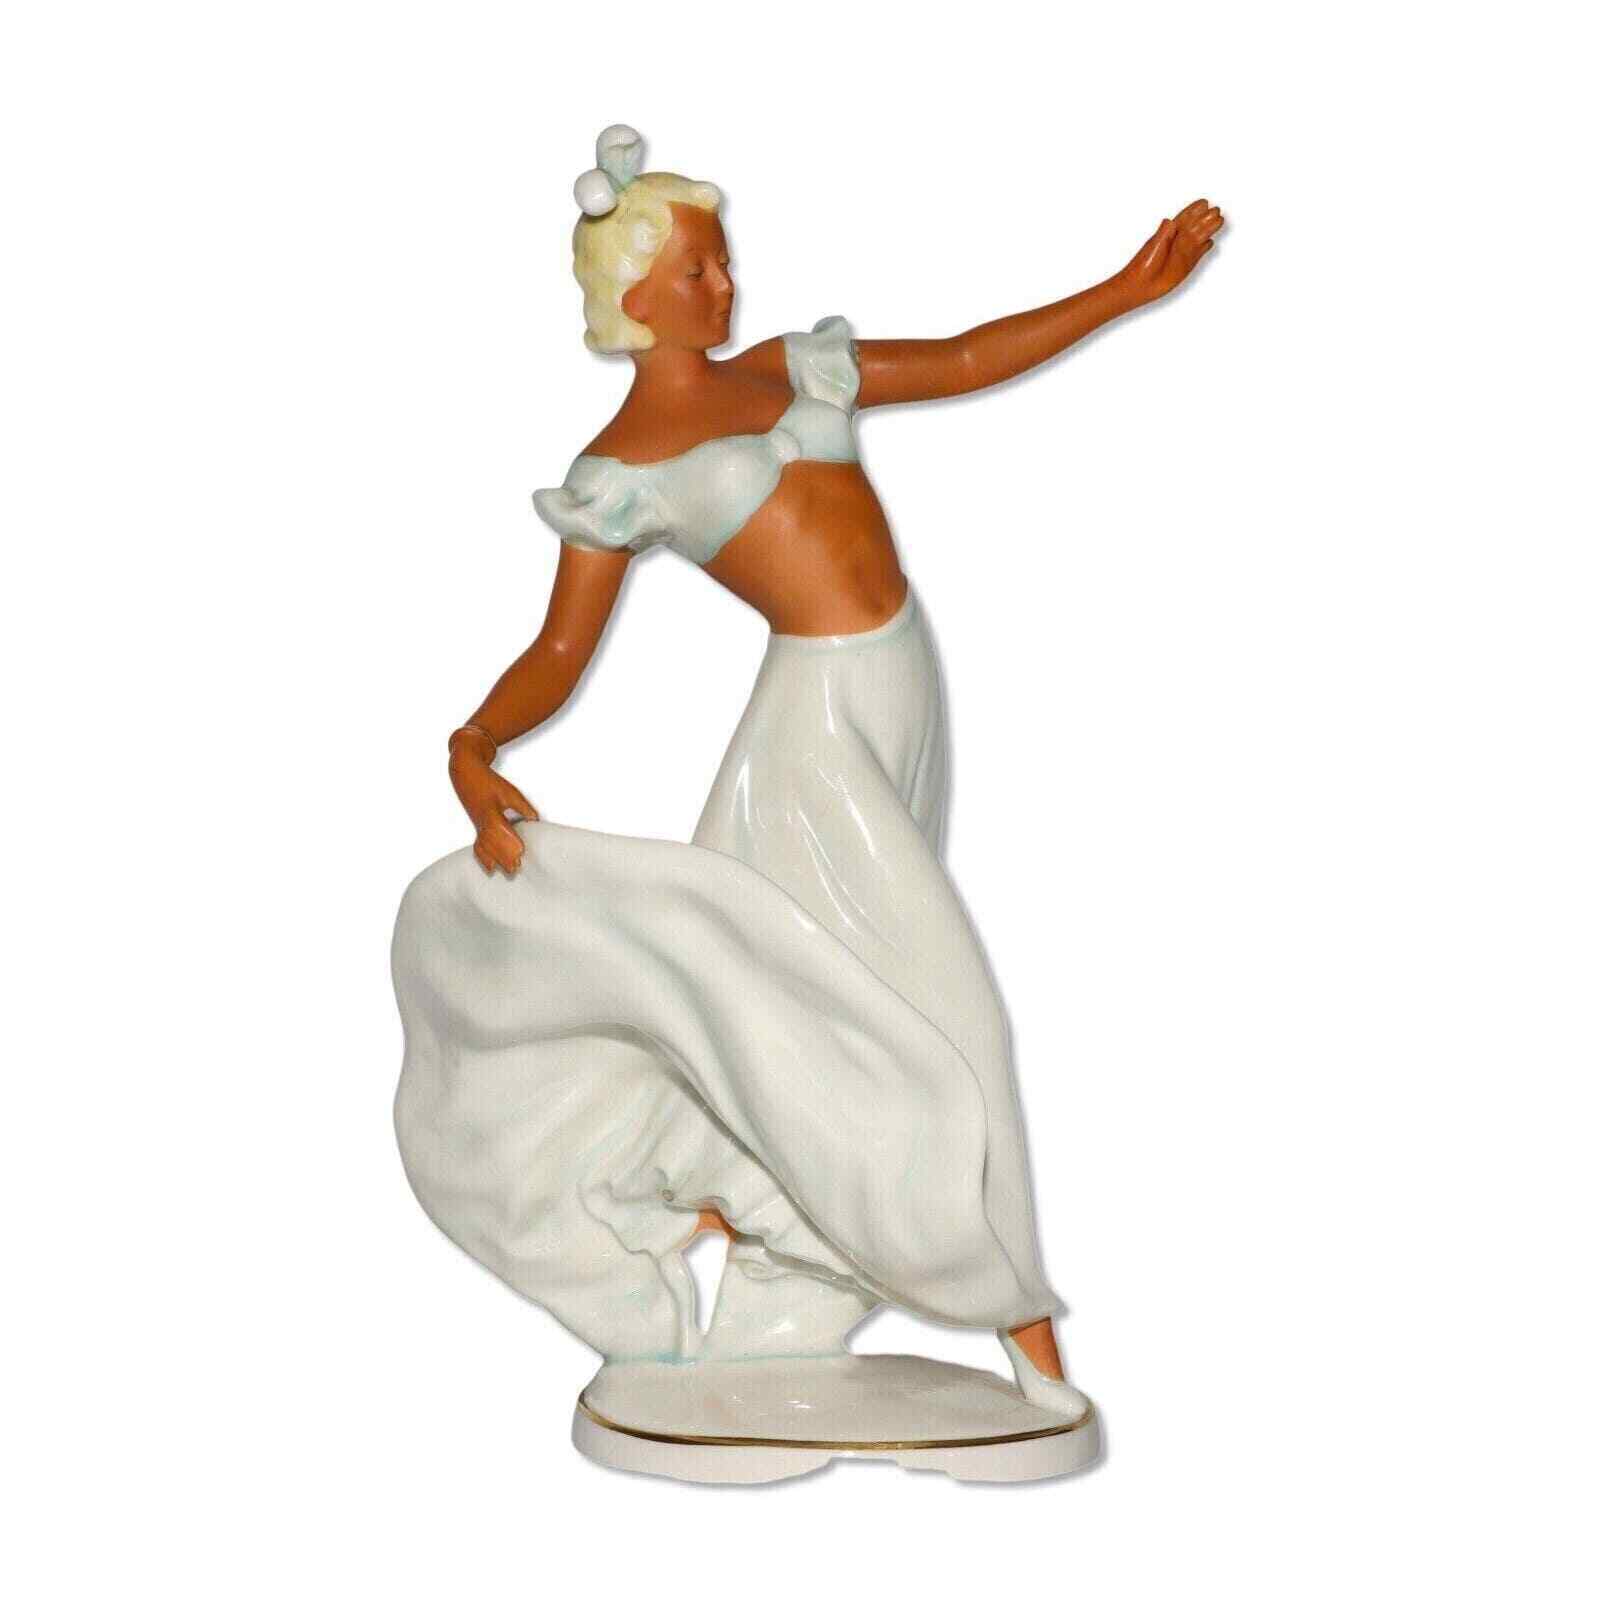 Schaubach-Kunst Wallendorf 1202 Dancing Lady 10” Figurine German Art Deco 1950's